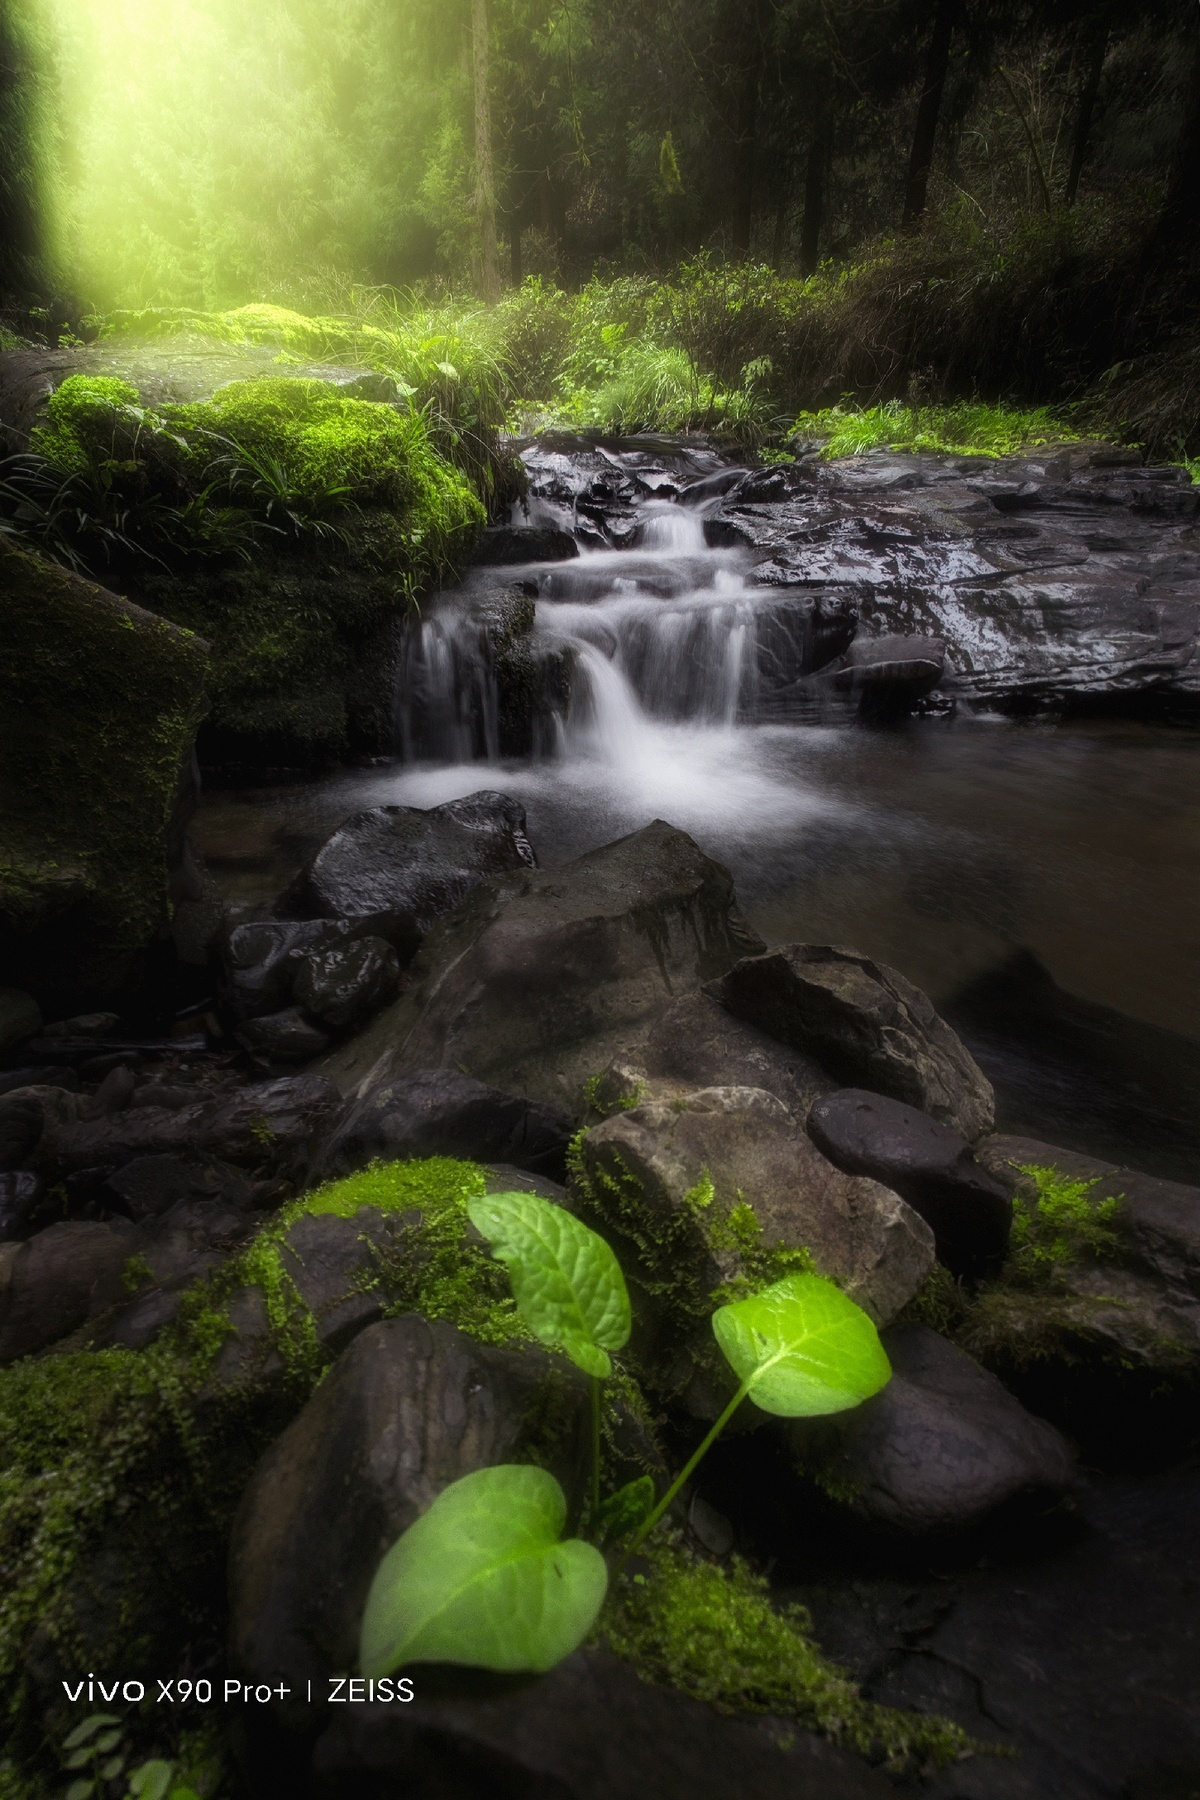 森林中的一小瀑布 岩石上有绿植 流水潺潺